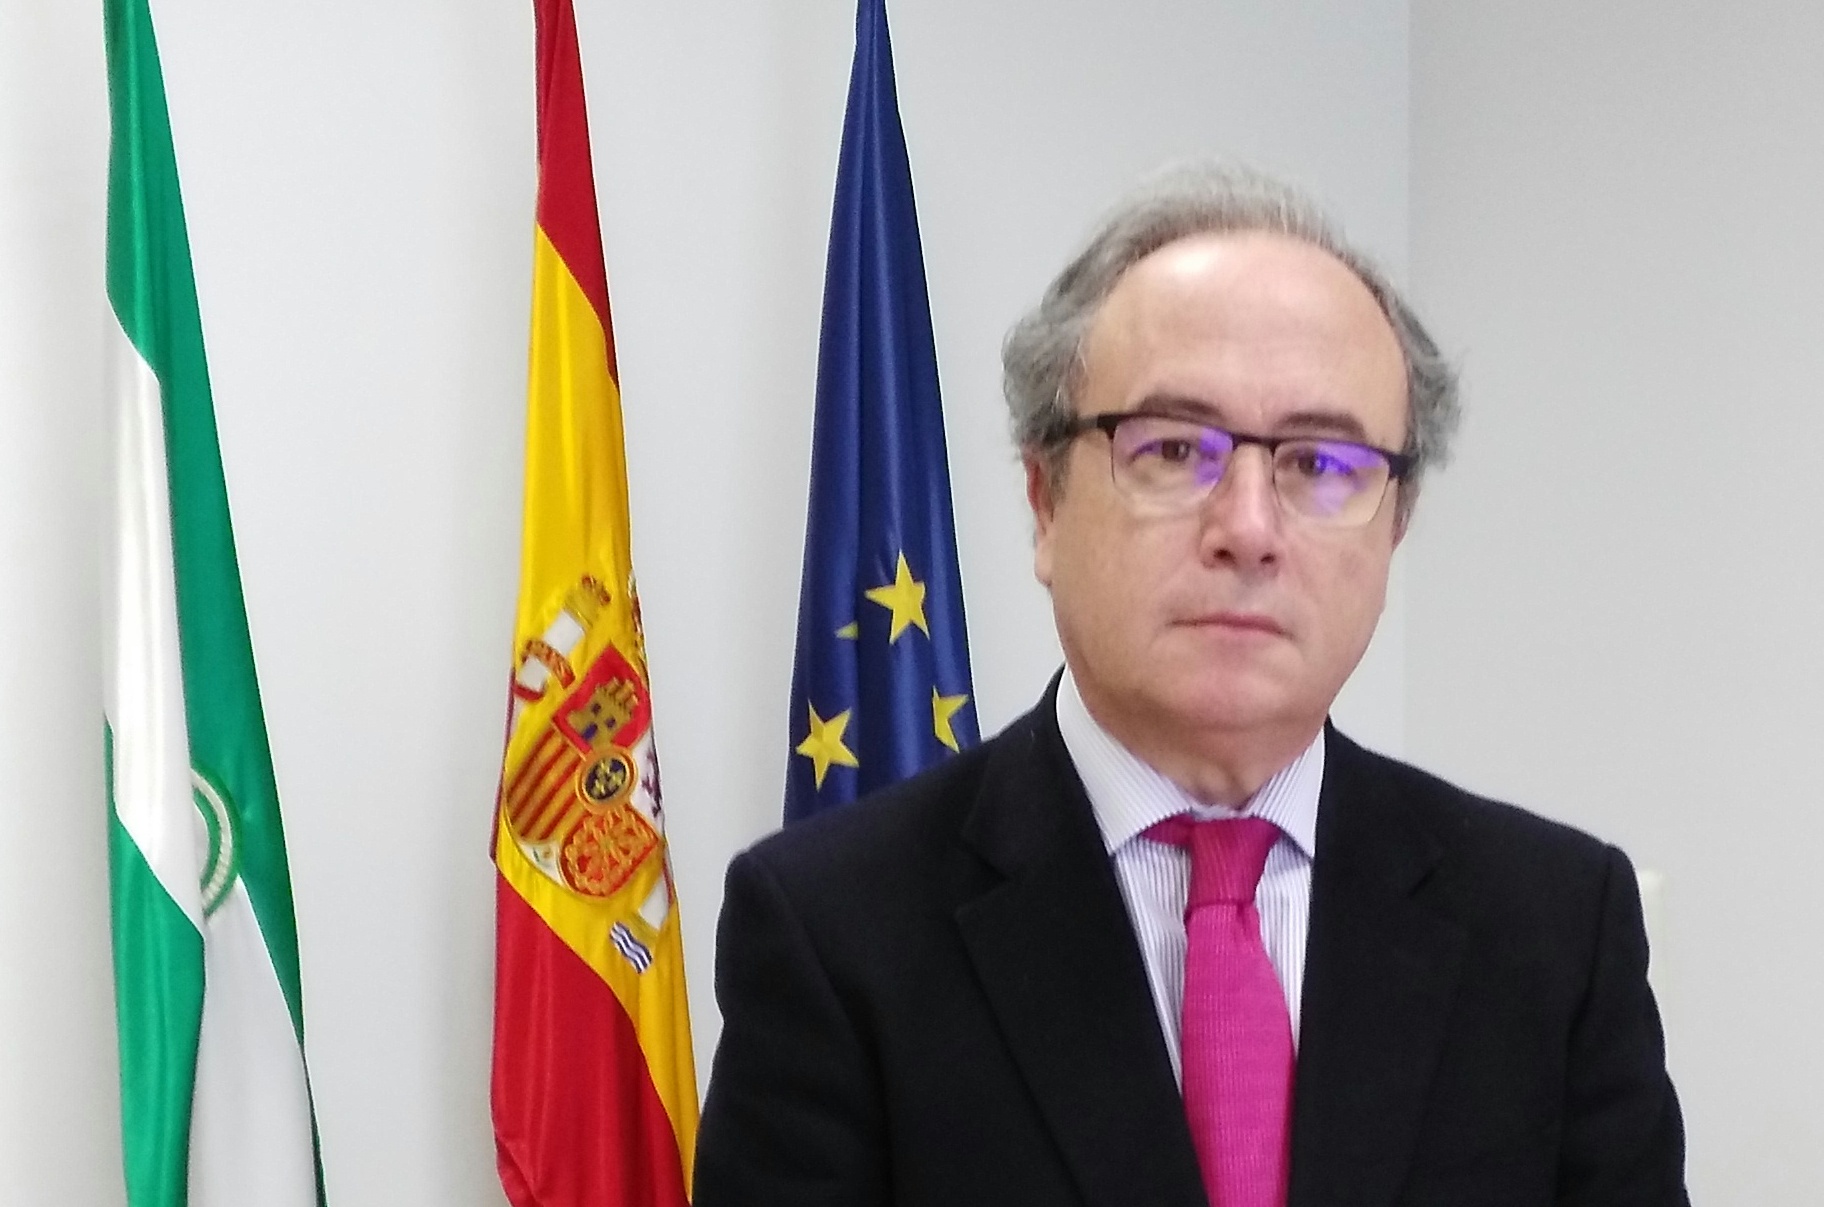 Antonio Díaz Córdoba, nace en Córdoba en el año 1958, es licenciado en Derecho por la Universidad de Córdoba. Desde 1985, es el Secretario general de la Confederación de Empresarios de Córdoba. (Imagen: Córdobapedia).